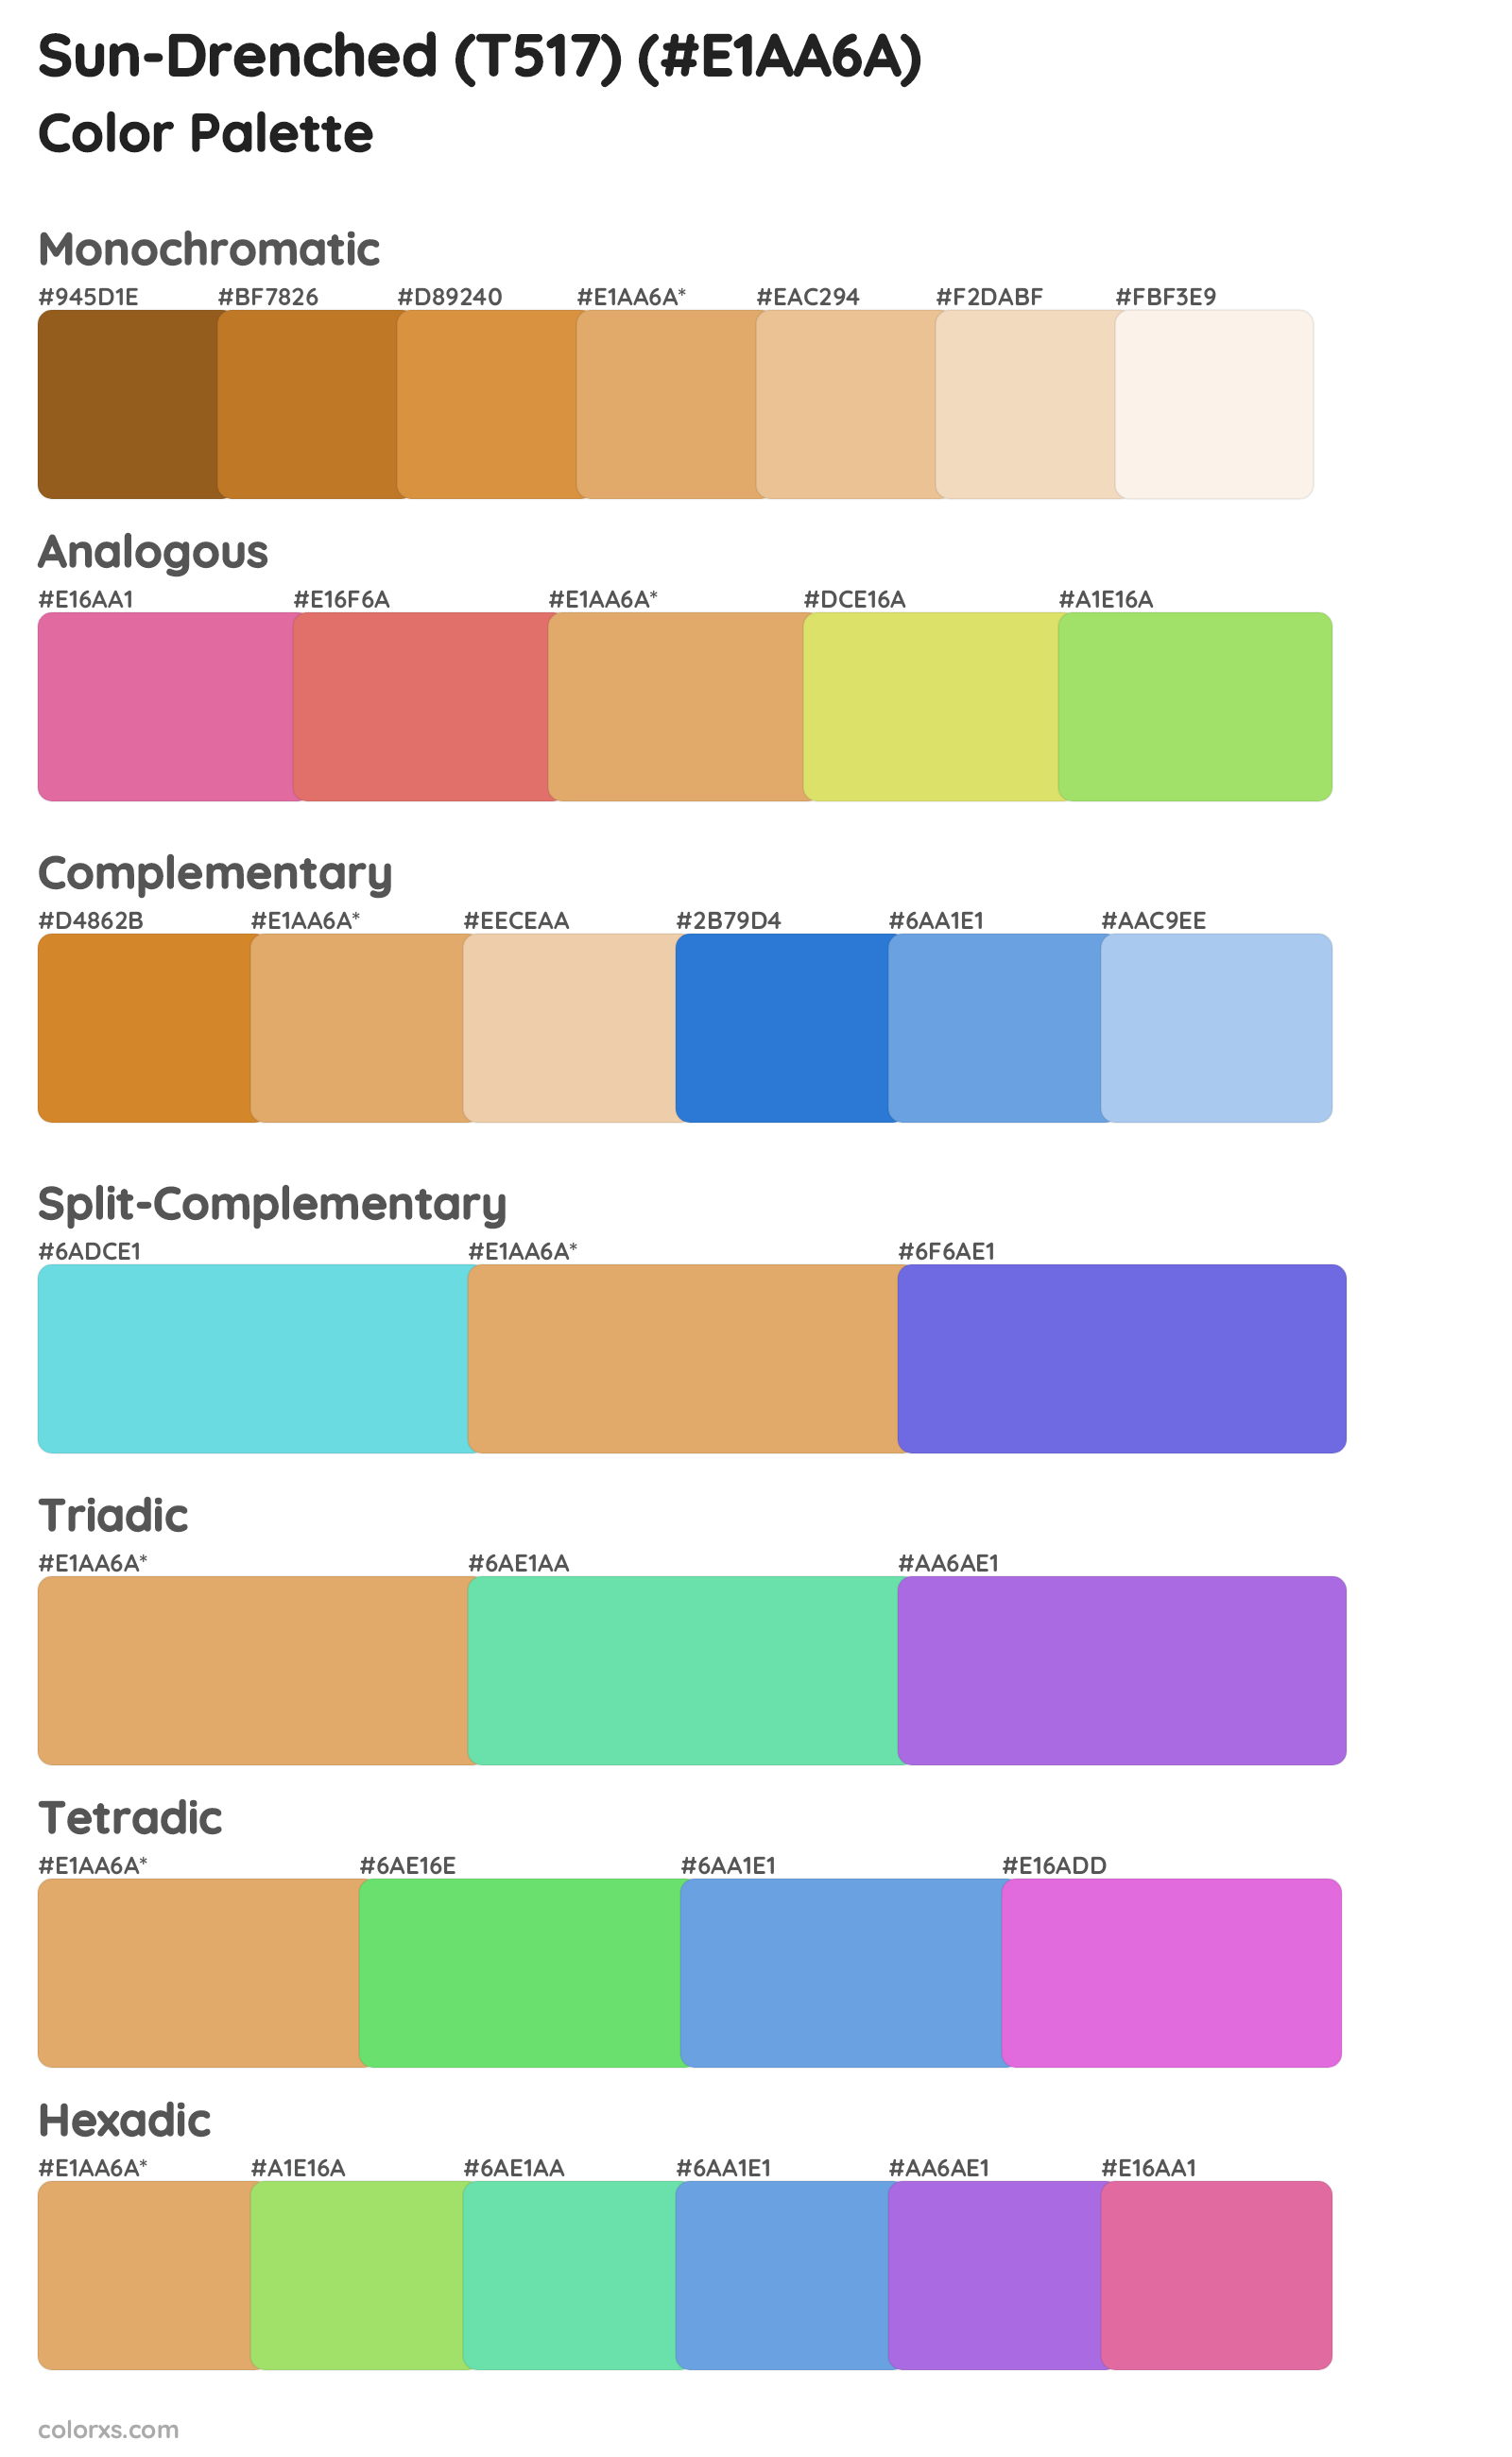 Sun-Drenched (T517) Color Scheme Palettes